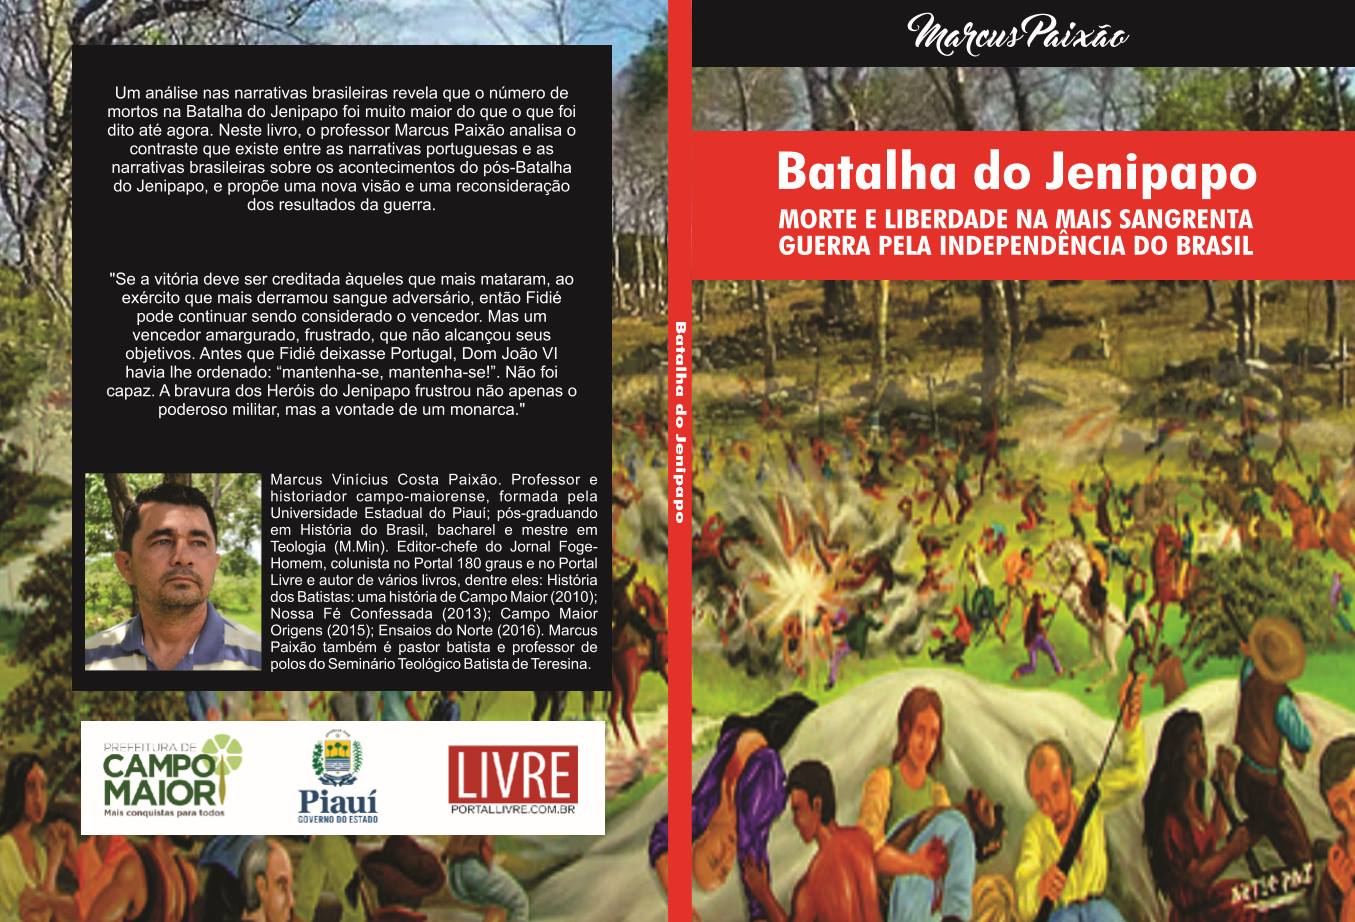 Livro Batalha do Jenipapo: morte e liberdade na mais sangrenta guerra pela independência do Brasil